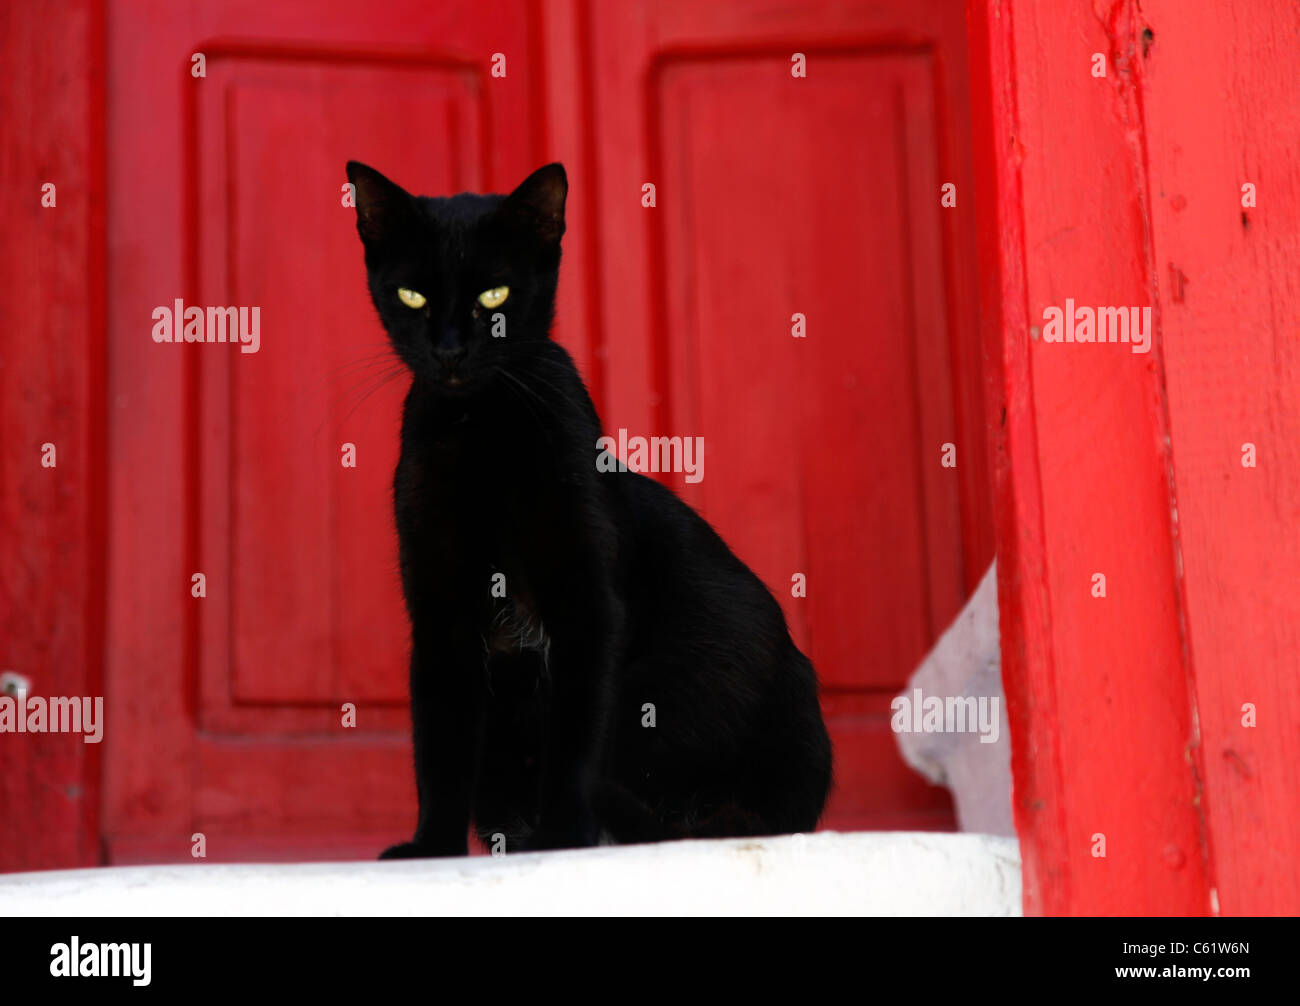 Gatto nero, con gli occhi verdi, seduti nella vecchia città di Mykonos, isola greca, di fronte ad una porta rossa, su una scala di colore bianco. Foto Stock